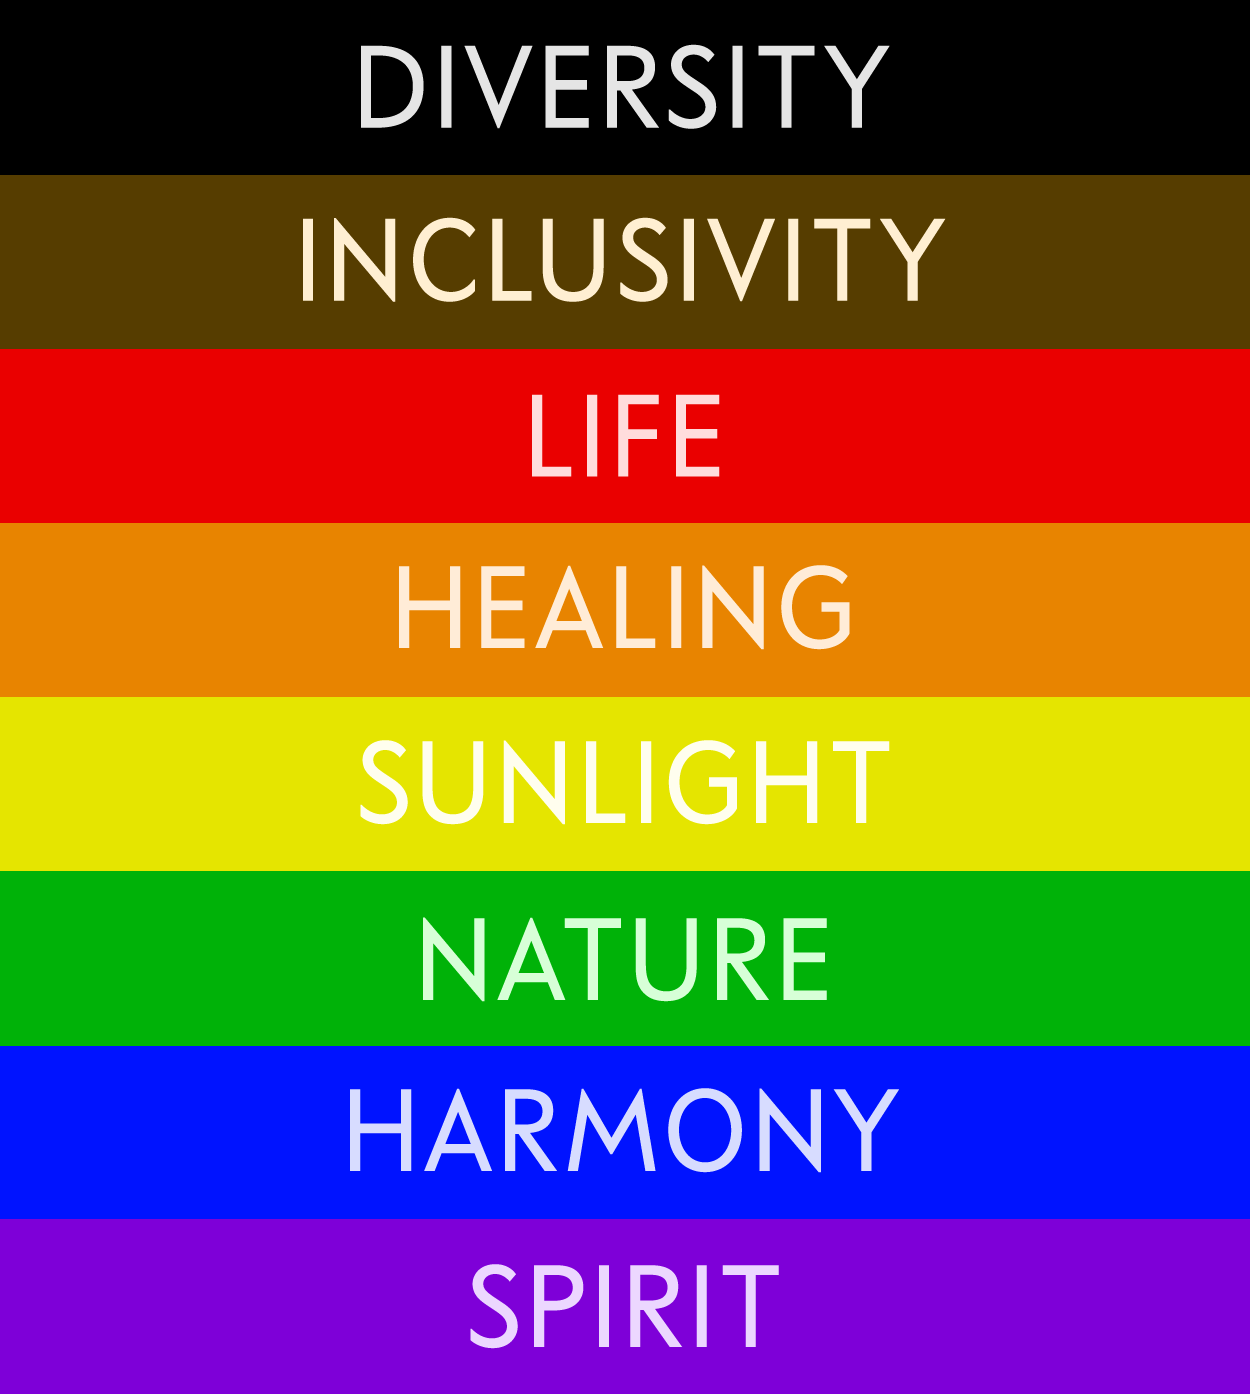 gay flag colors represent